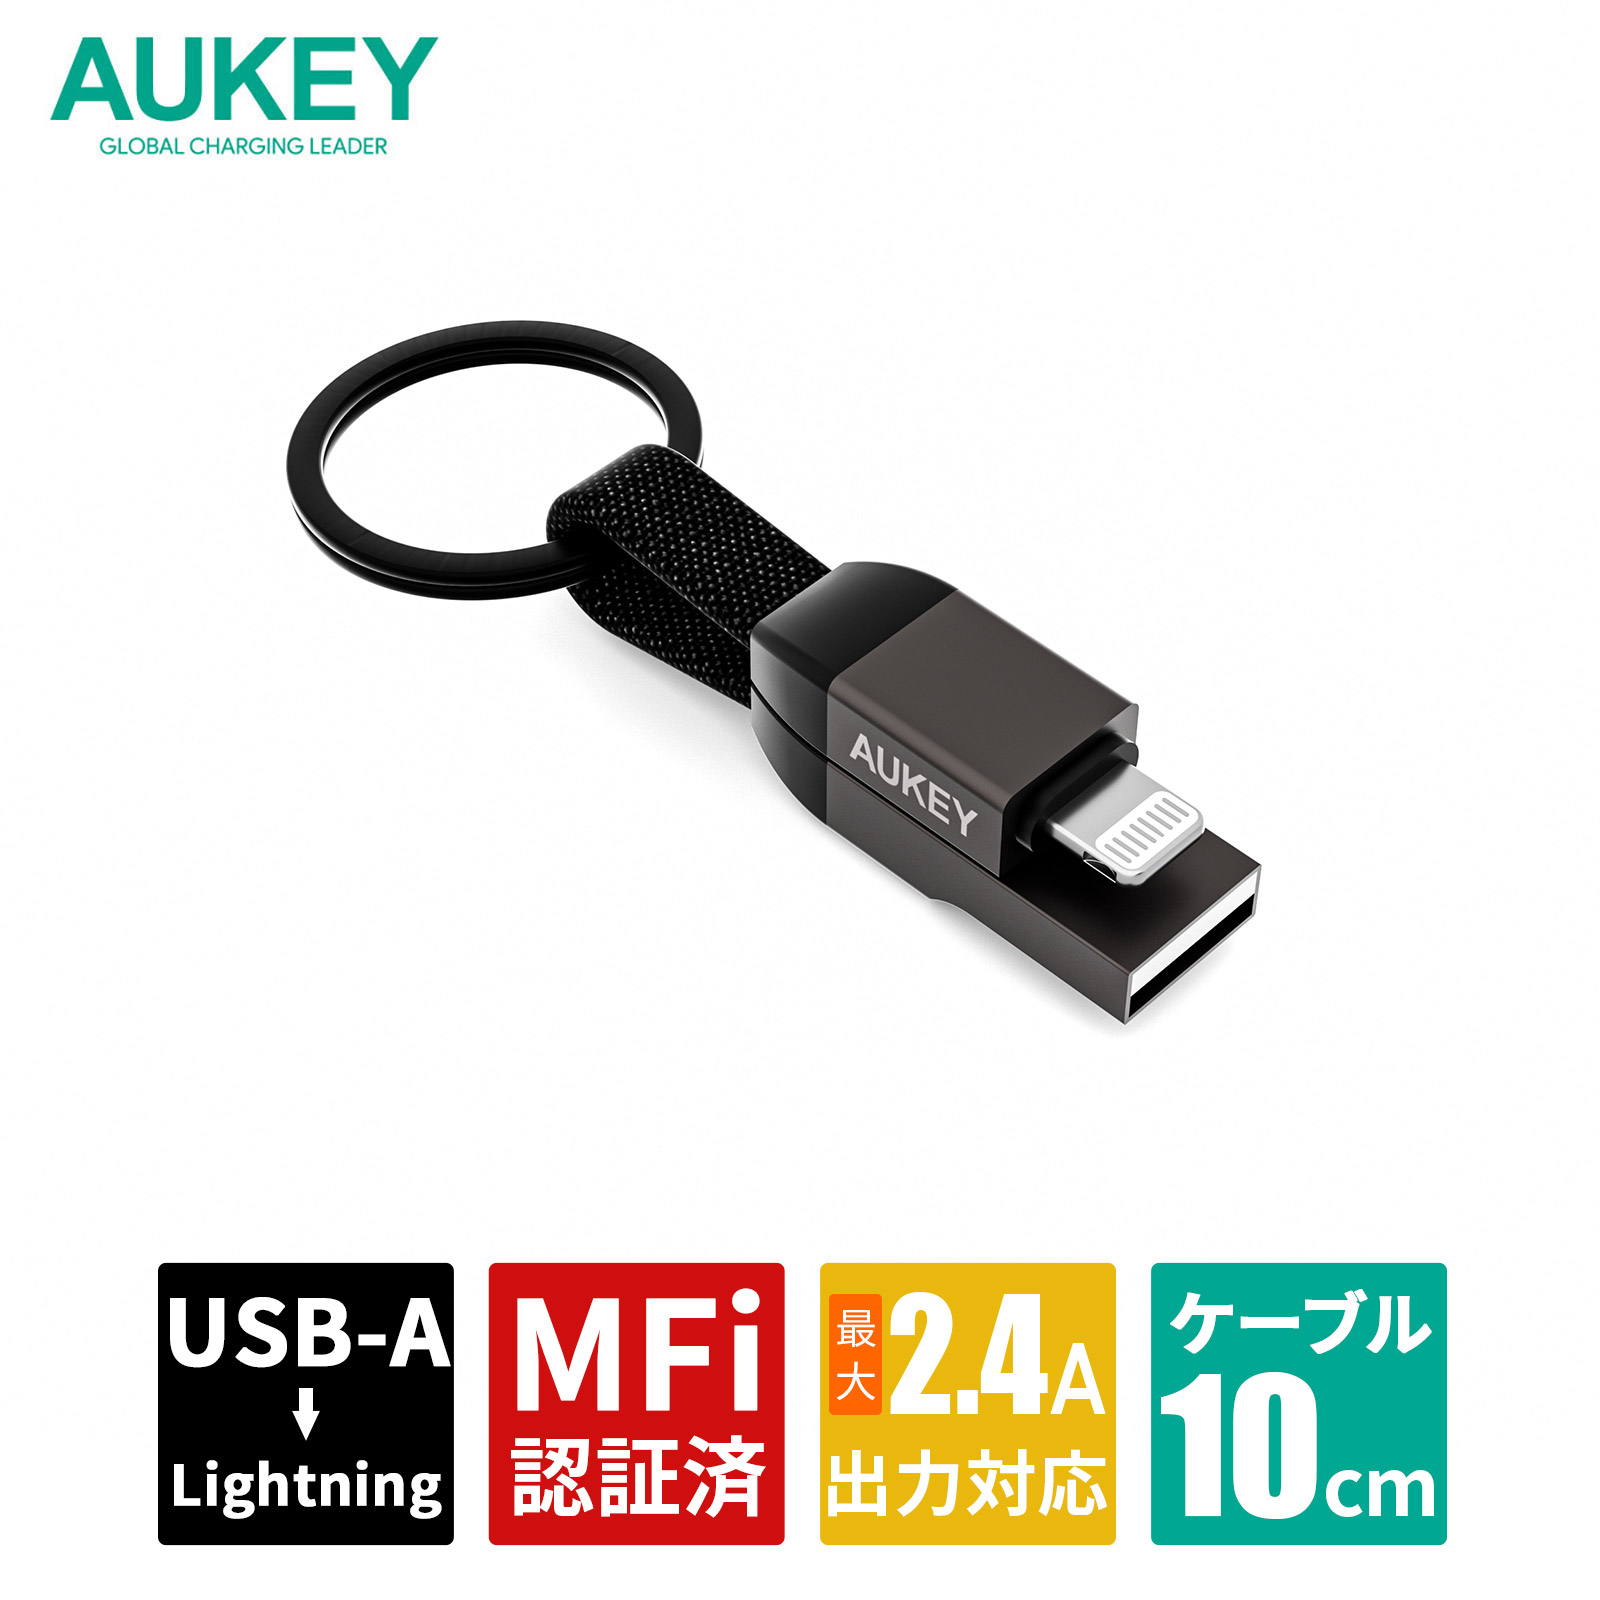 キーホルダー型USB-A to Lケーブル CB-AKL6